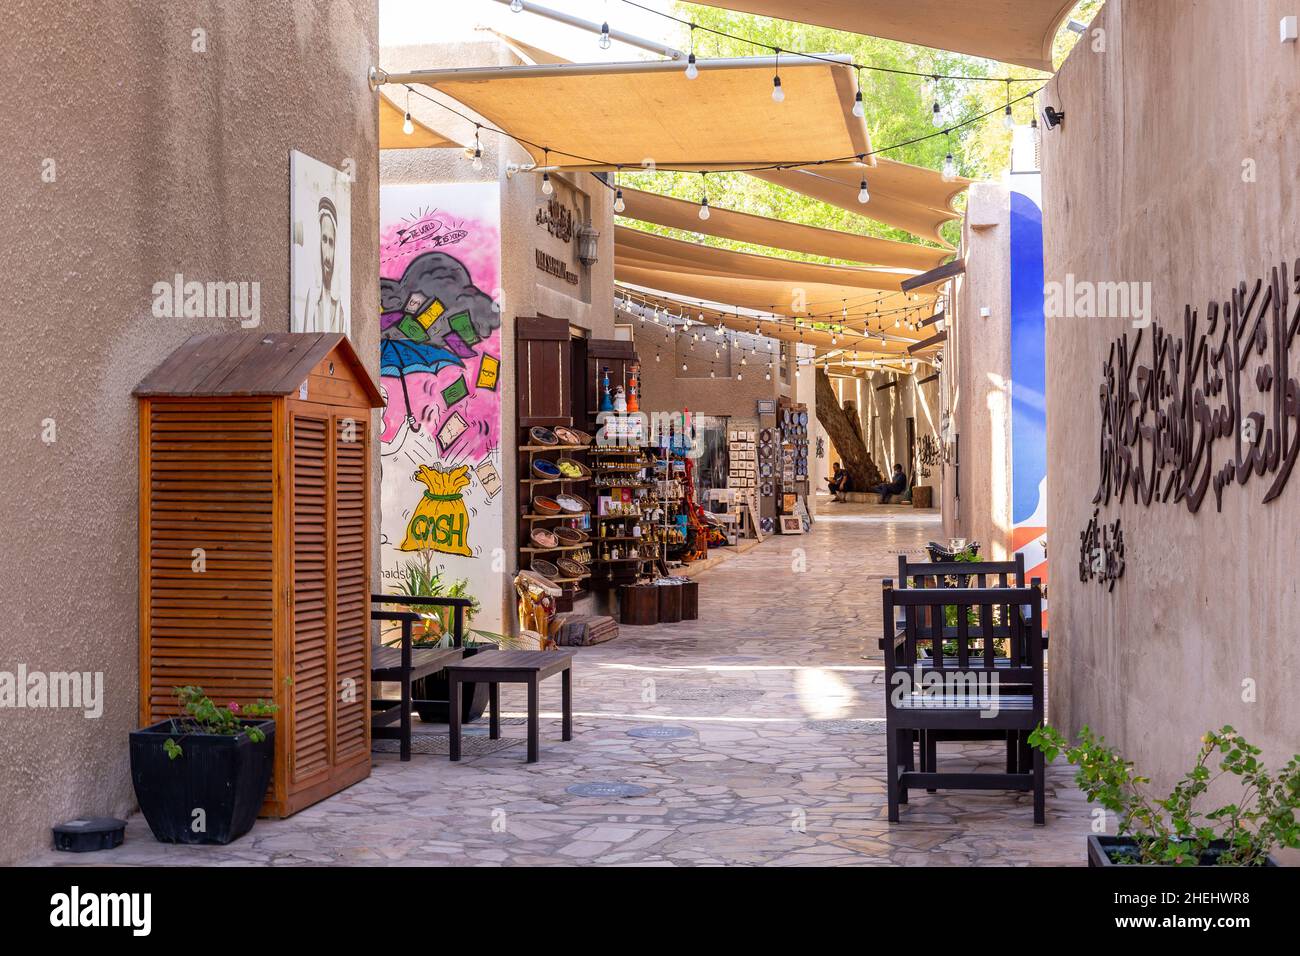 Dubaï, Émirats arabes Unis, 27.09.2021.Quartier historique d'Al Fahidi charmante rue en pierre avec boutiques traditionnelles de souvenirs artisanaux et d'épices (souk) et parasols. Banque D'Images